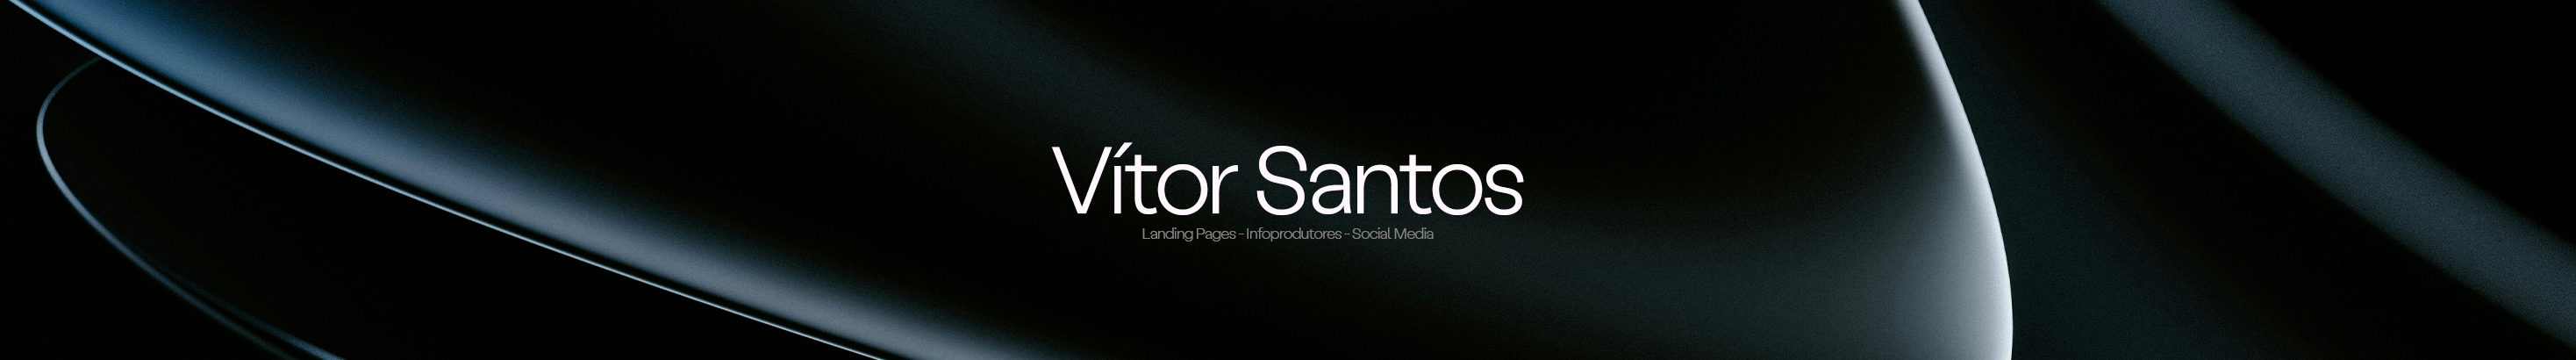 Profil-Banner von Vítor Santos